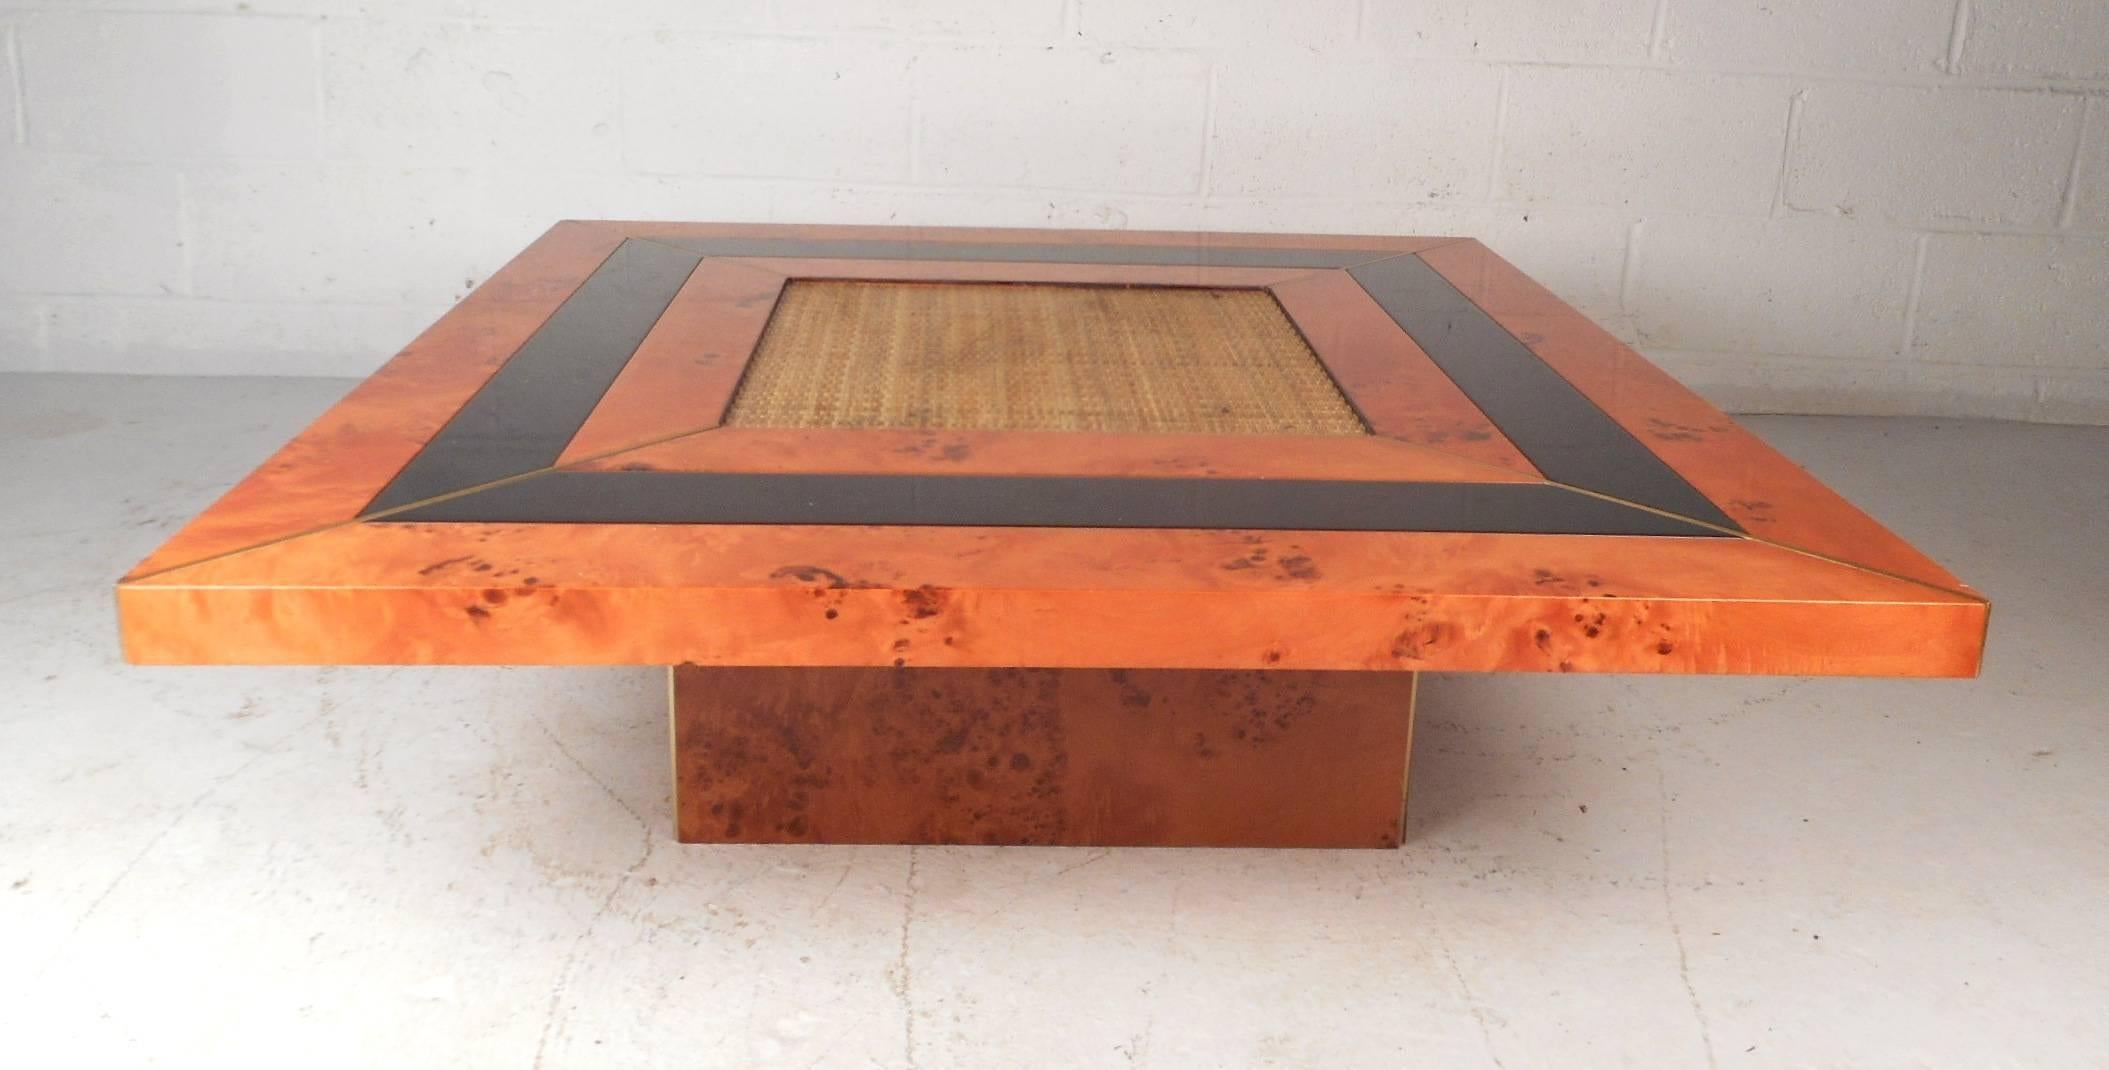 Cette belle table basse moderne vintage est fabriquée en bois de ronce avec un centre tissé. Design bas et élégant, avec une bande de laque noire s'enroulant tout autour du plateau entre les ronces. Cette pièce inhabituelle est dotée d'une garniture